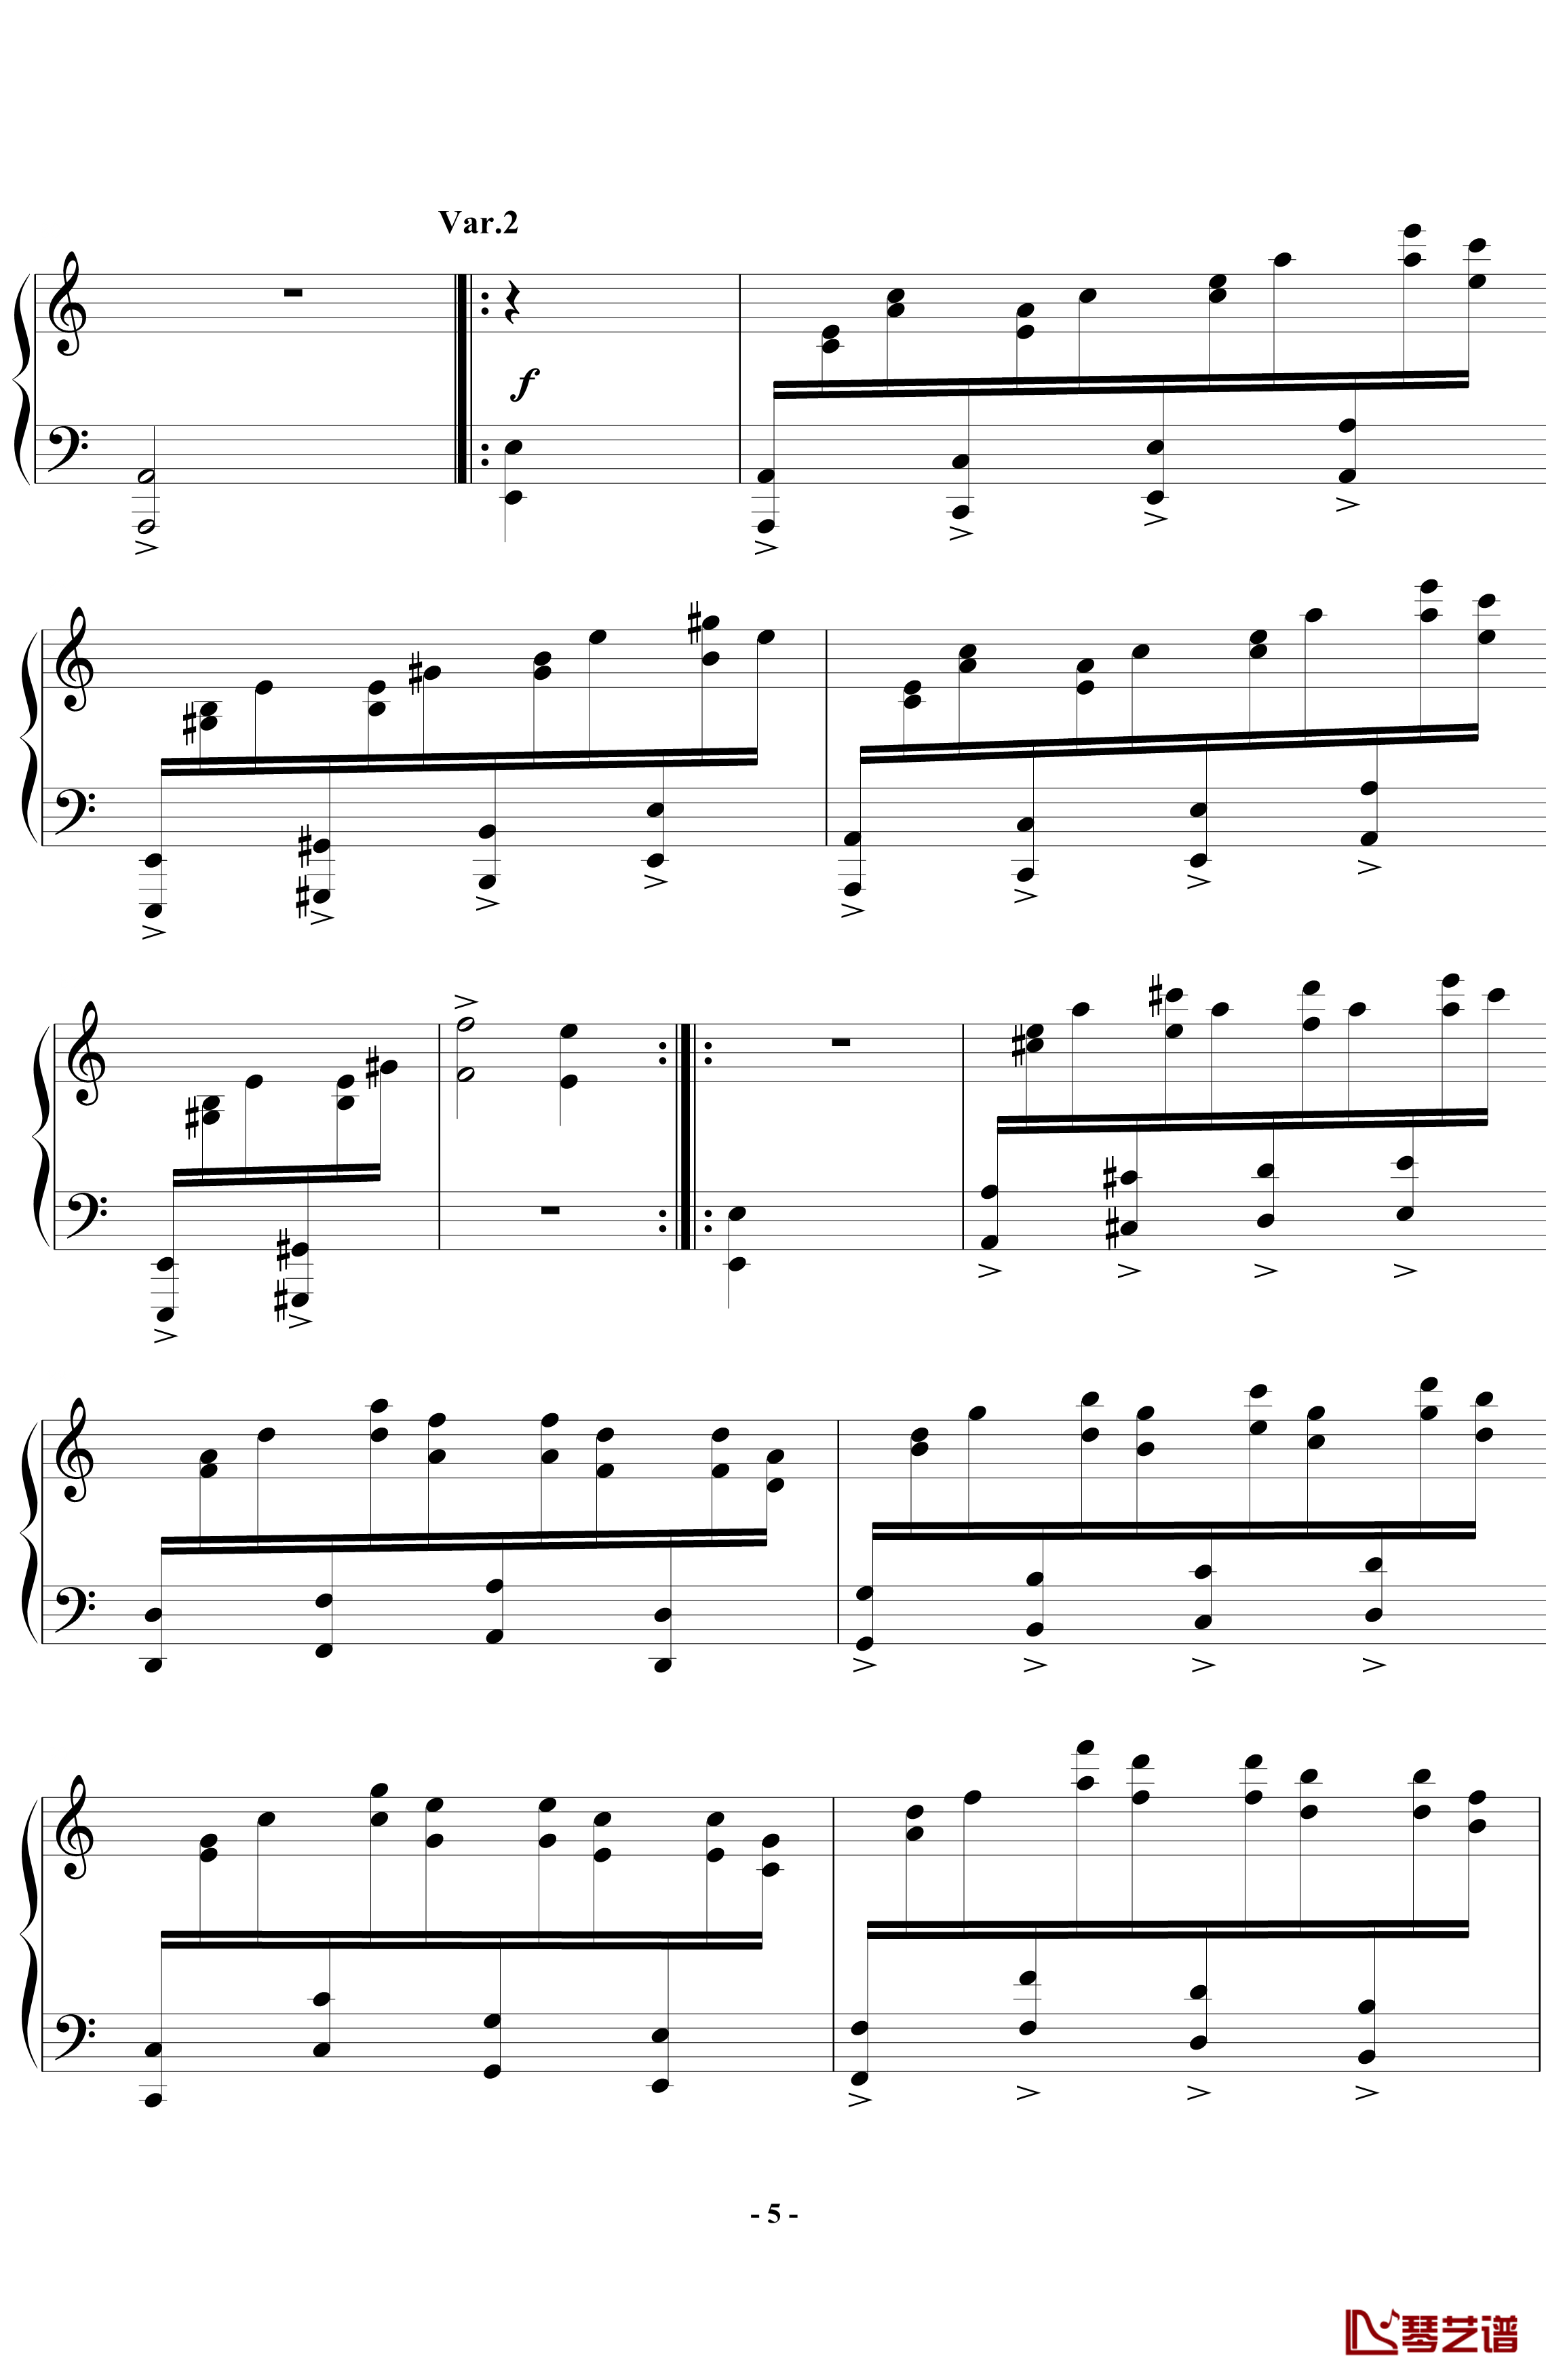 帕格尼尼飞絮曲钢琴谱-标准版-马克西姆-Maksim·Mrvica5